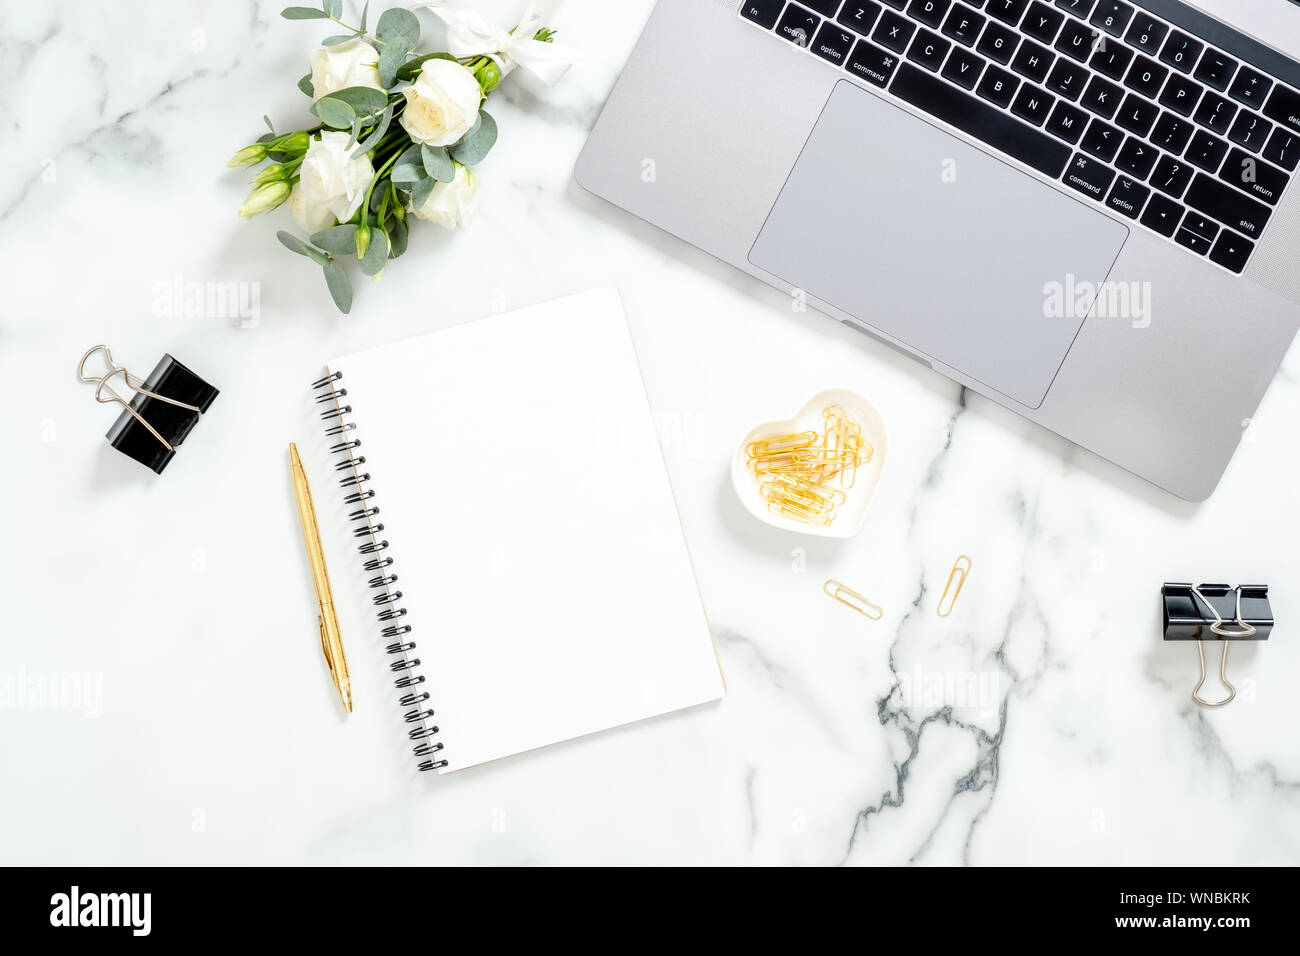 Marmor Büro Schreibtisch Tisch mit Laptop, Tagebuch, golden Schreibwaren, Bürobedarf, Blumen Blumenstrauß auf weißem Marmor Oberfläche. Flach, Ansicht von oben feminine backgrou Stockfoto